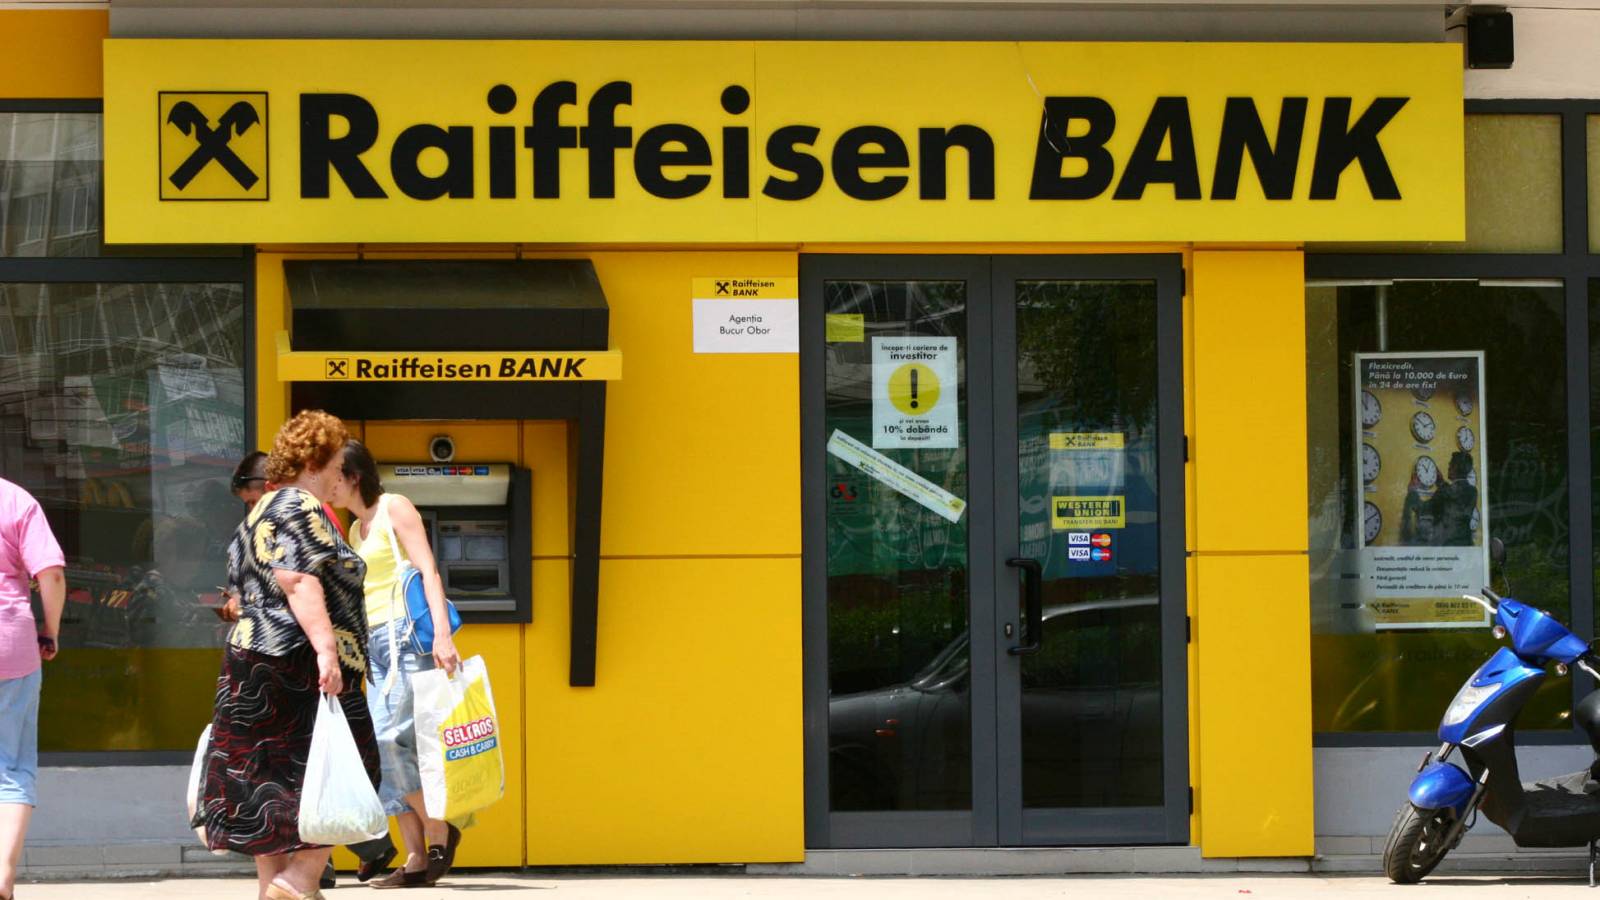 Raiffeisen Bank lovers